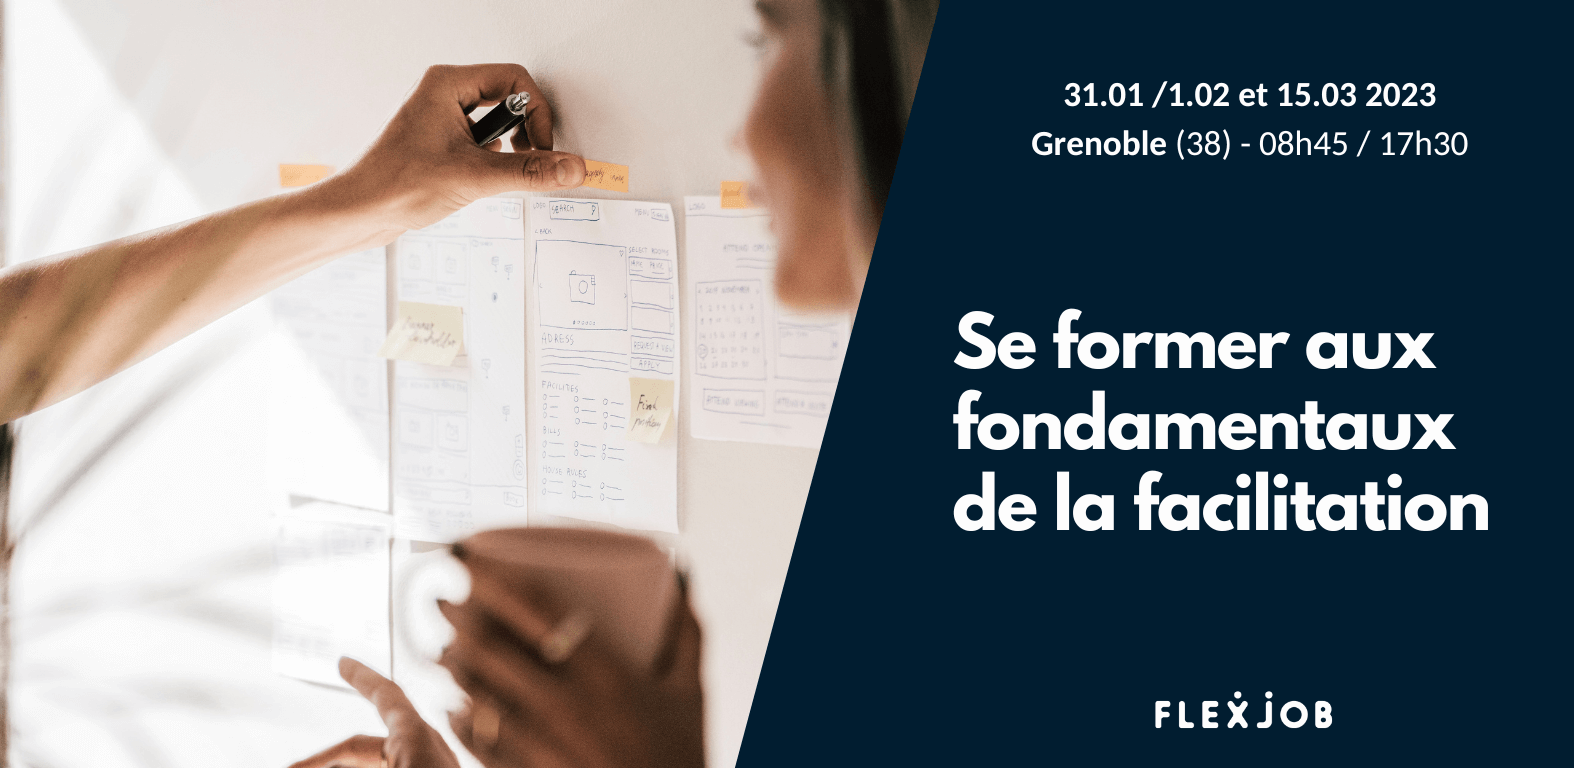 Venez vous former à la facilitation avec FlexJob à Grenoble !